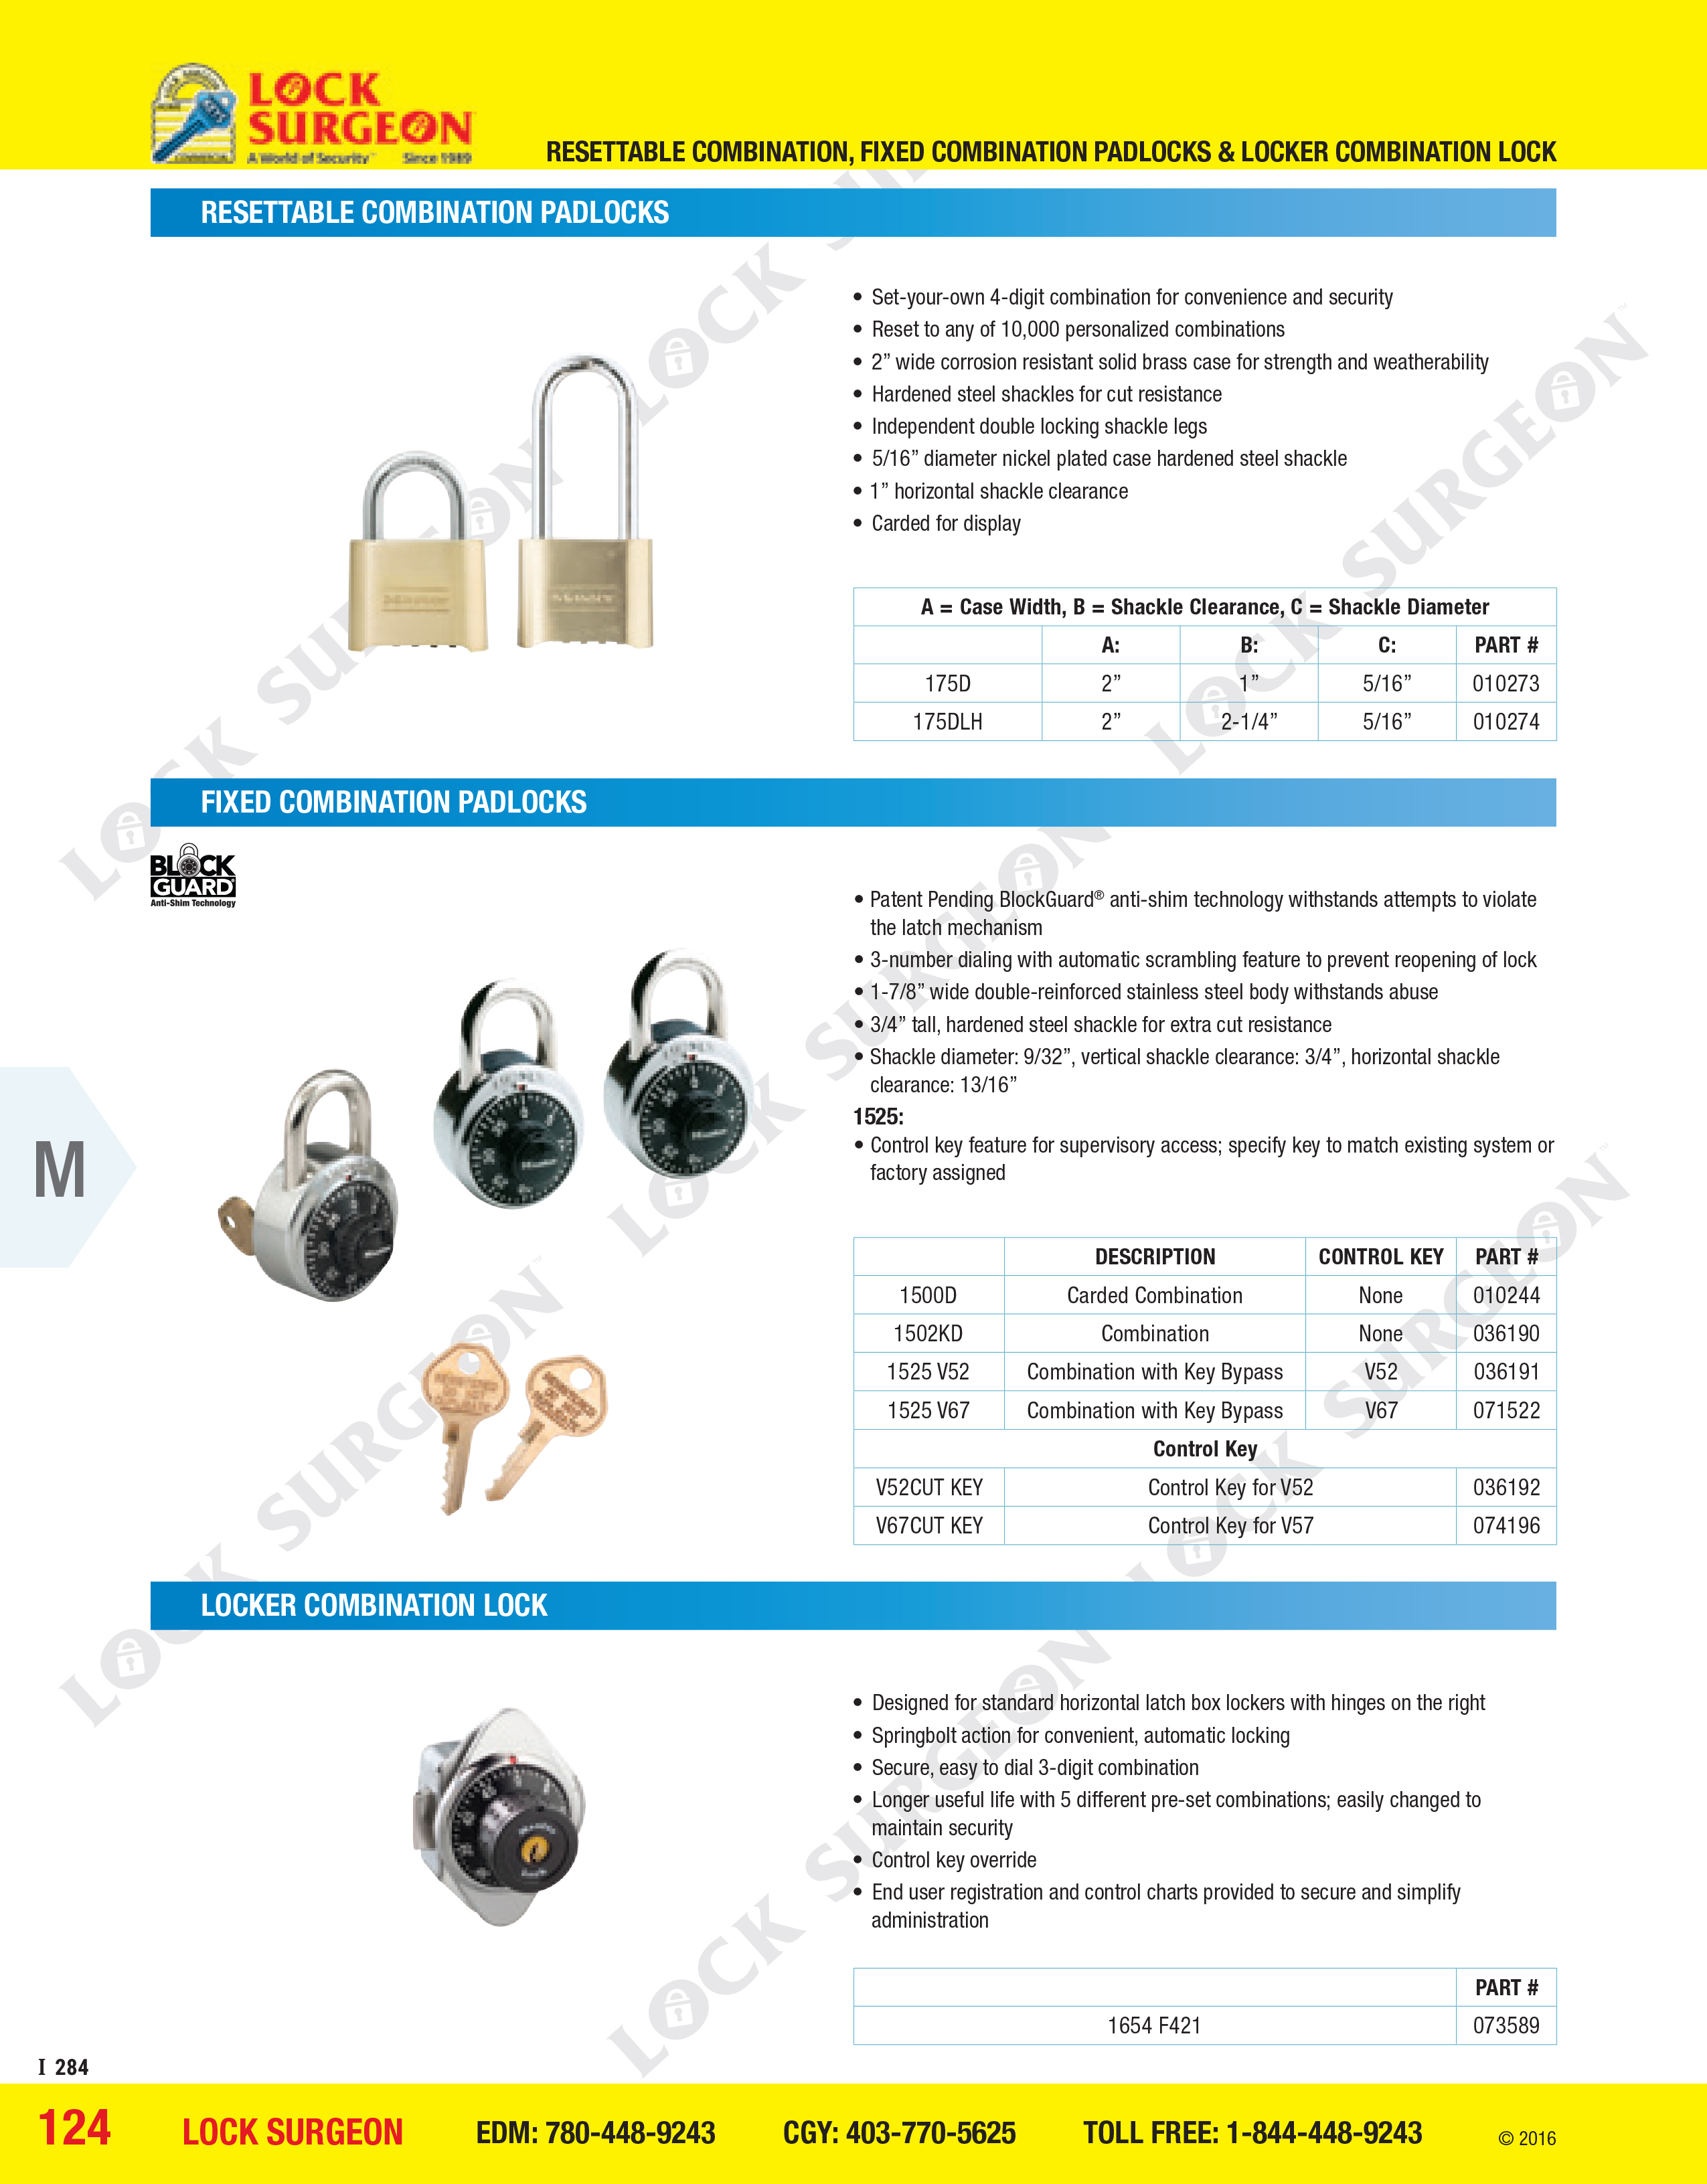 Lock Surgeon Resettable combination padlocks, fixed combination padlocks, locker combination locks.